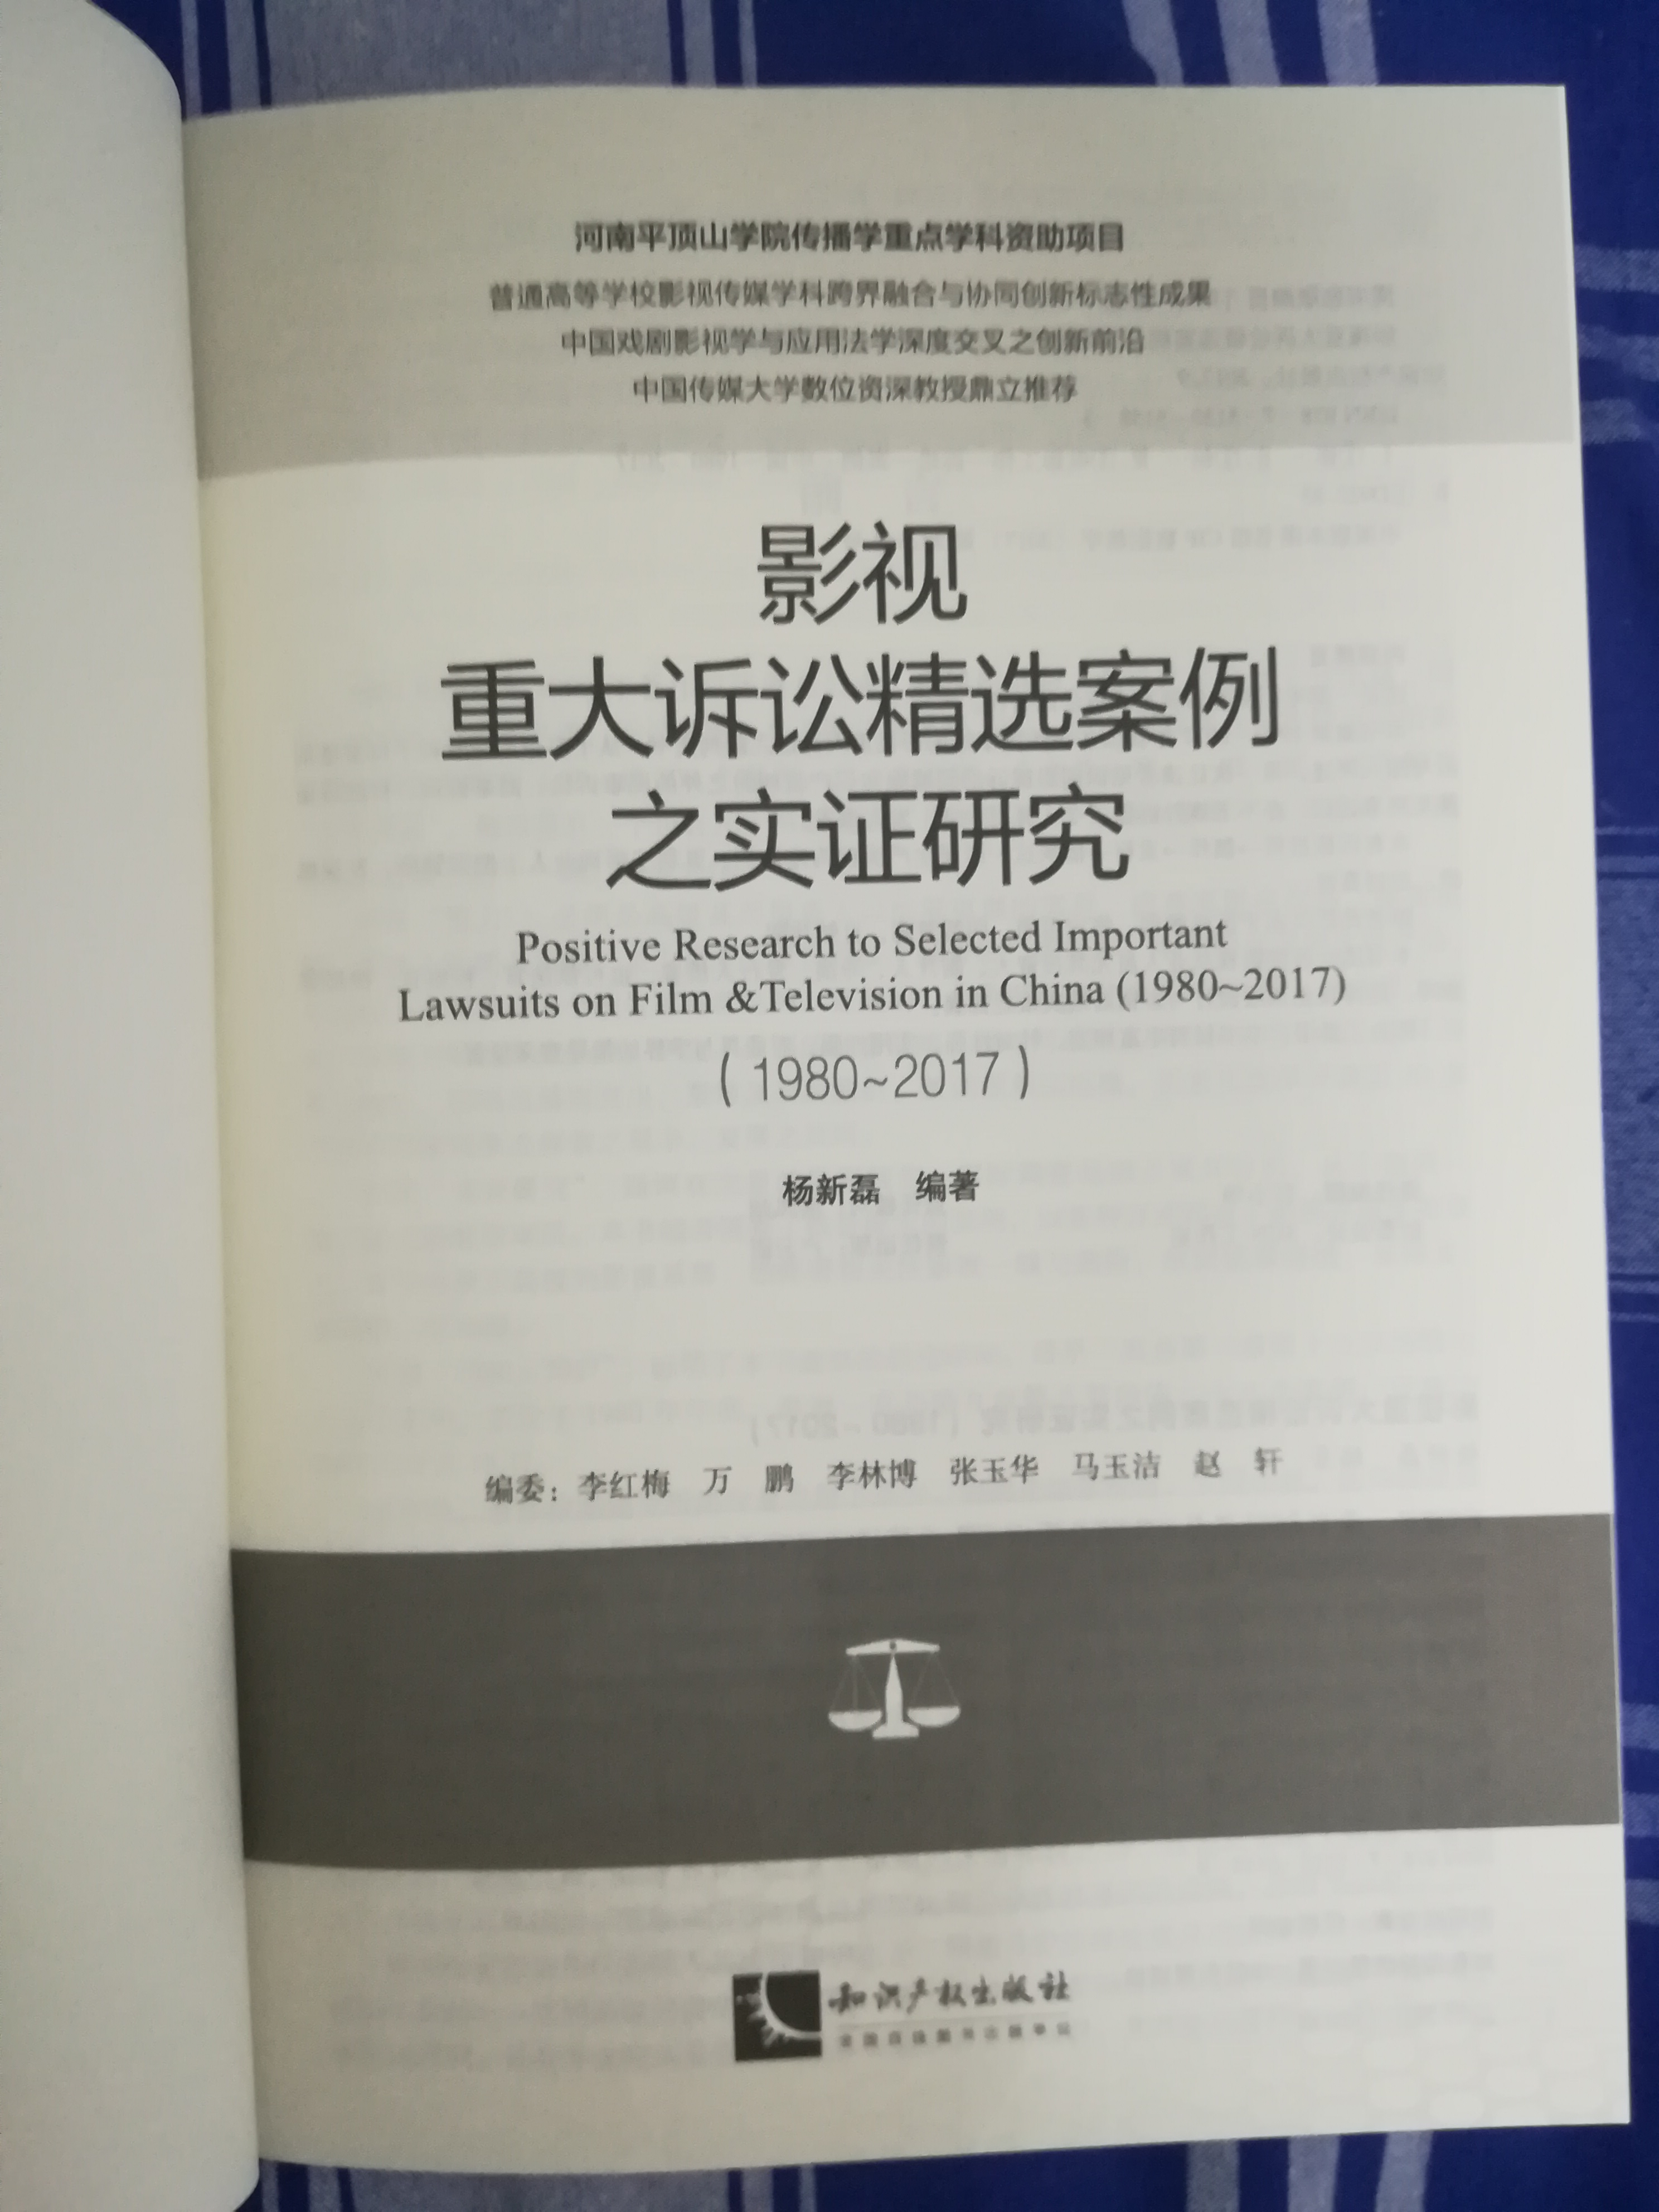 影視重大訴訟精選案例之實證研究(1980-2017)